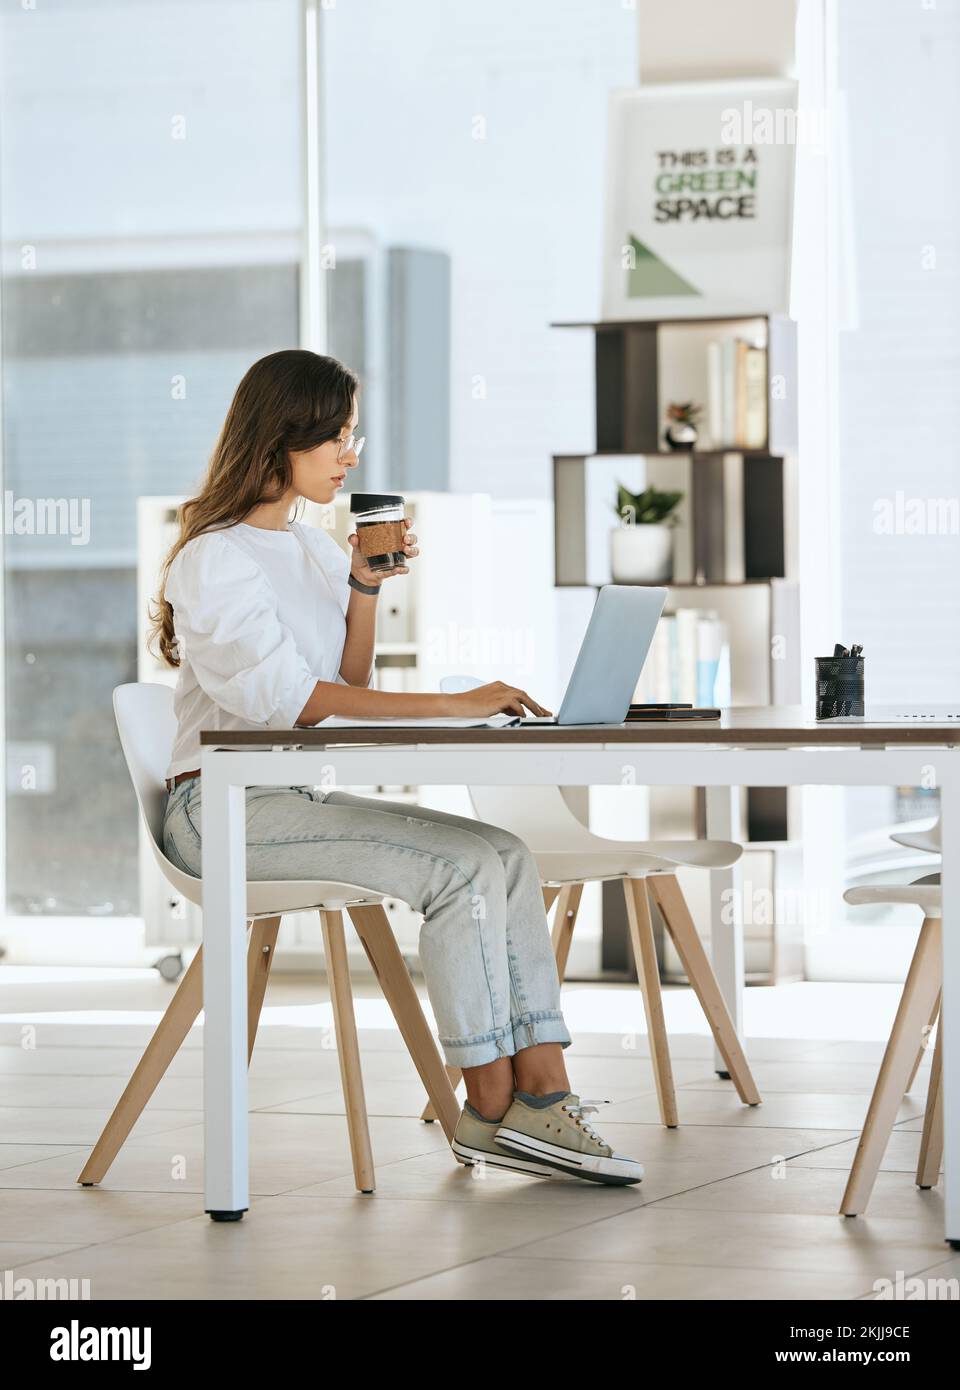 Laptop, Kaffee und Geschäftsfrau im Büro, die Espresso oder Cappuccino trinkt. Computer, Tee und Frau aus Kanada mit heißem Getränk beim Tippen Stockfoto